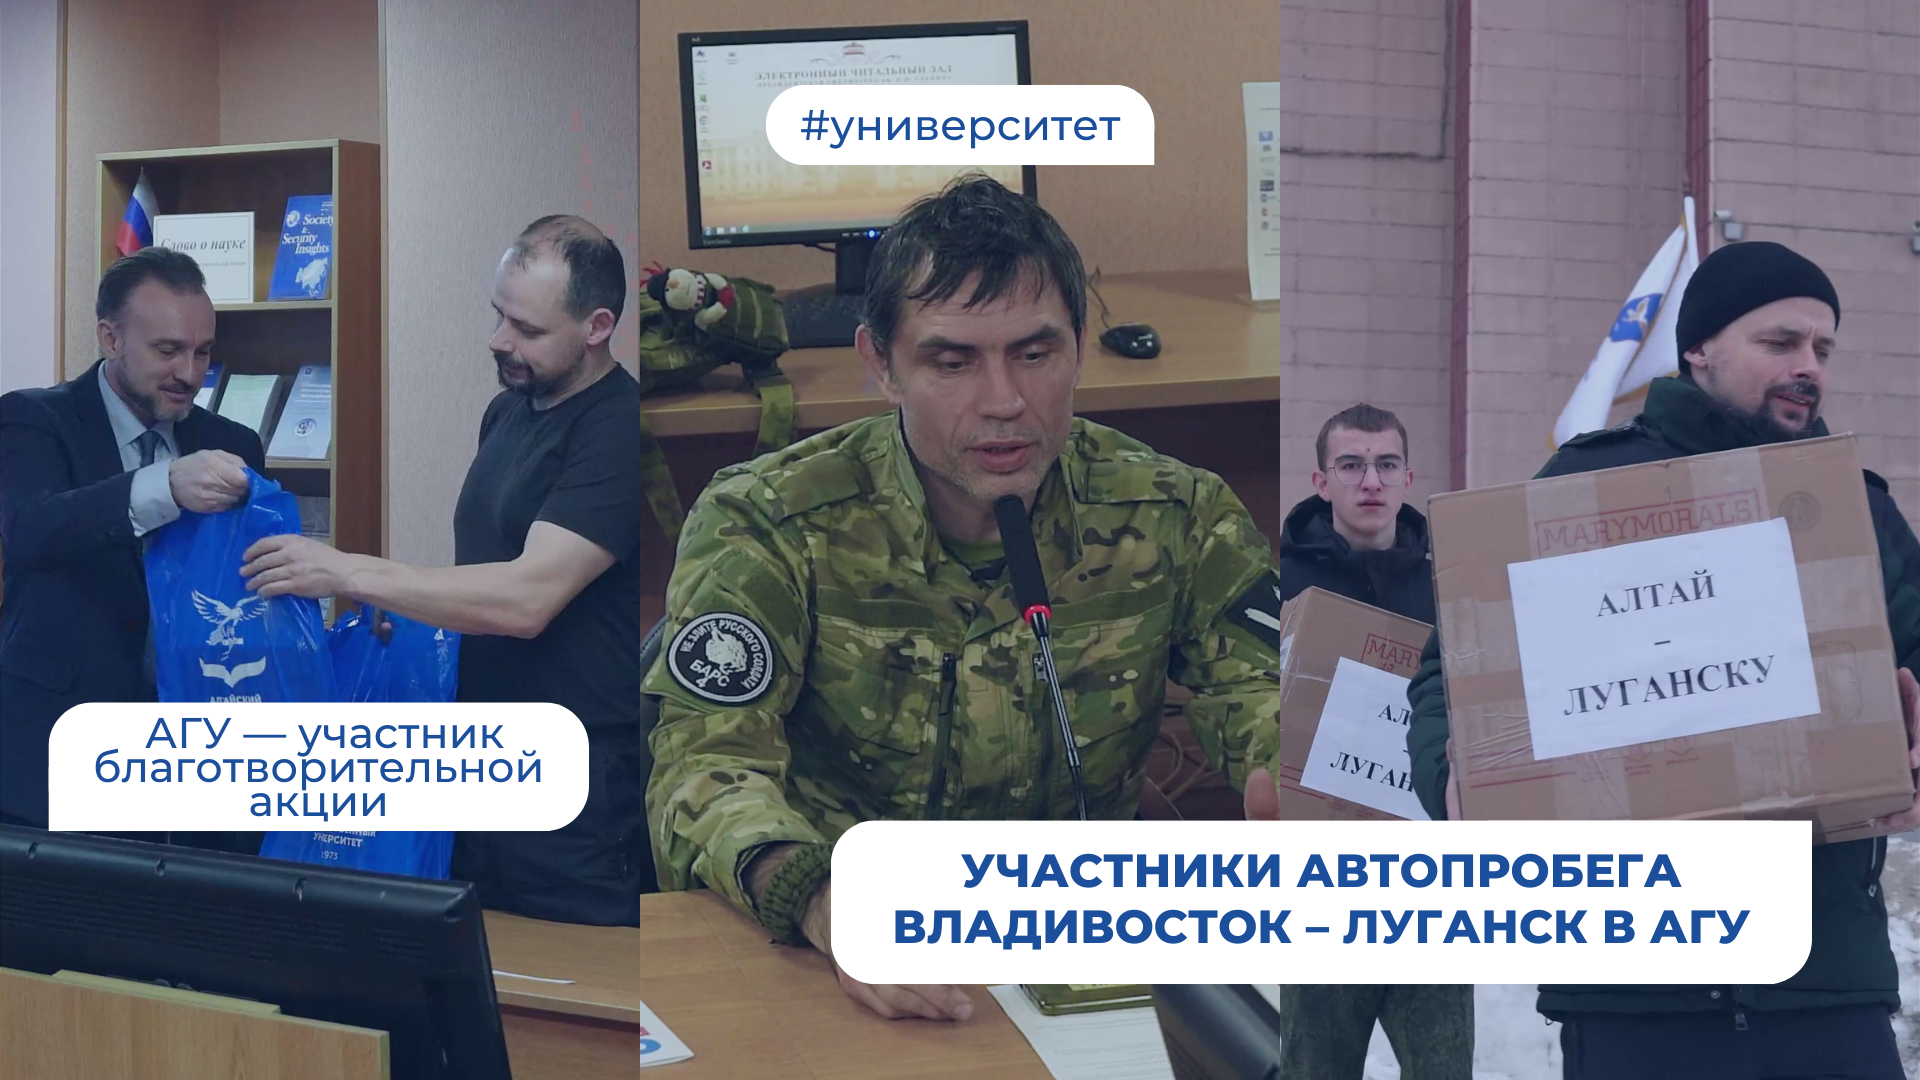 Участники автопробега Владивосток – Луганск в АлтГУ | Медиа.Hub